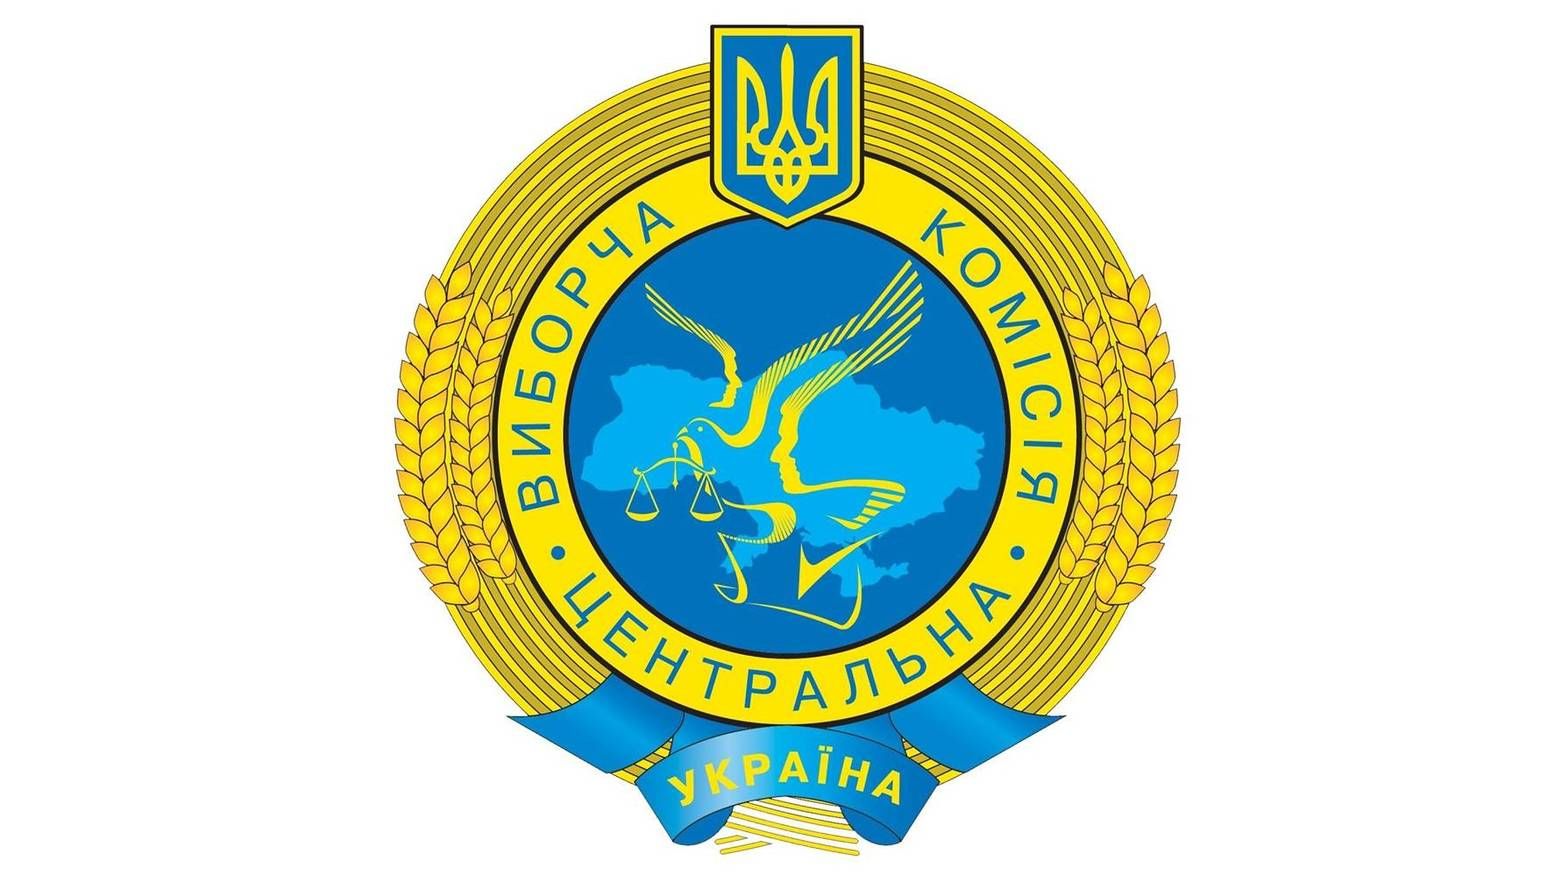 Эмблема Центральной Избирательной Комиссии Украины